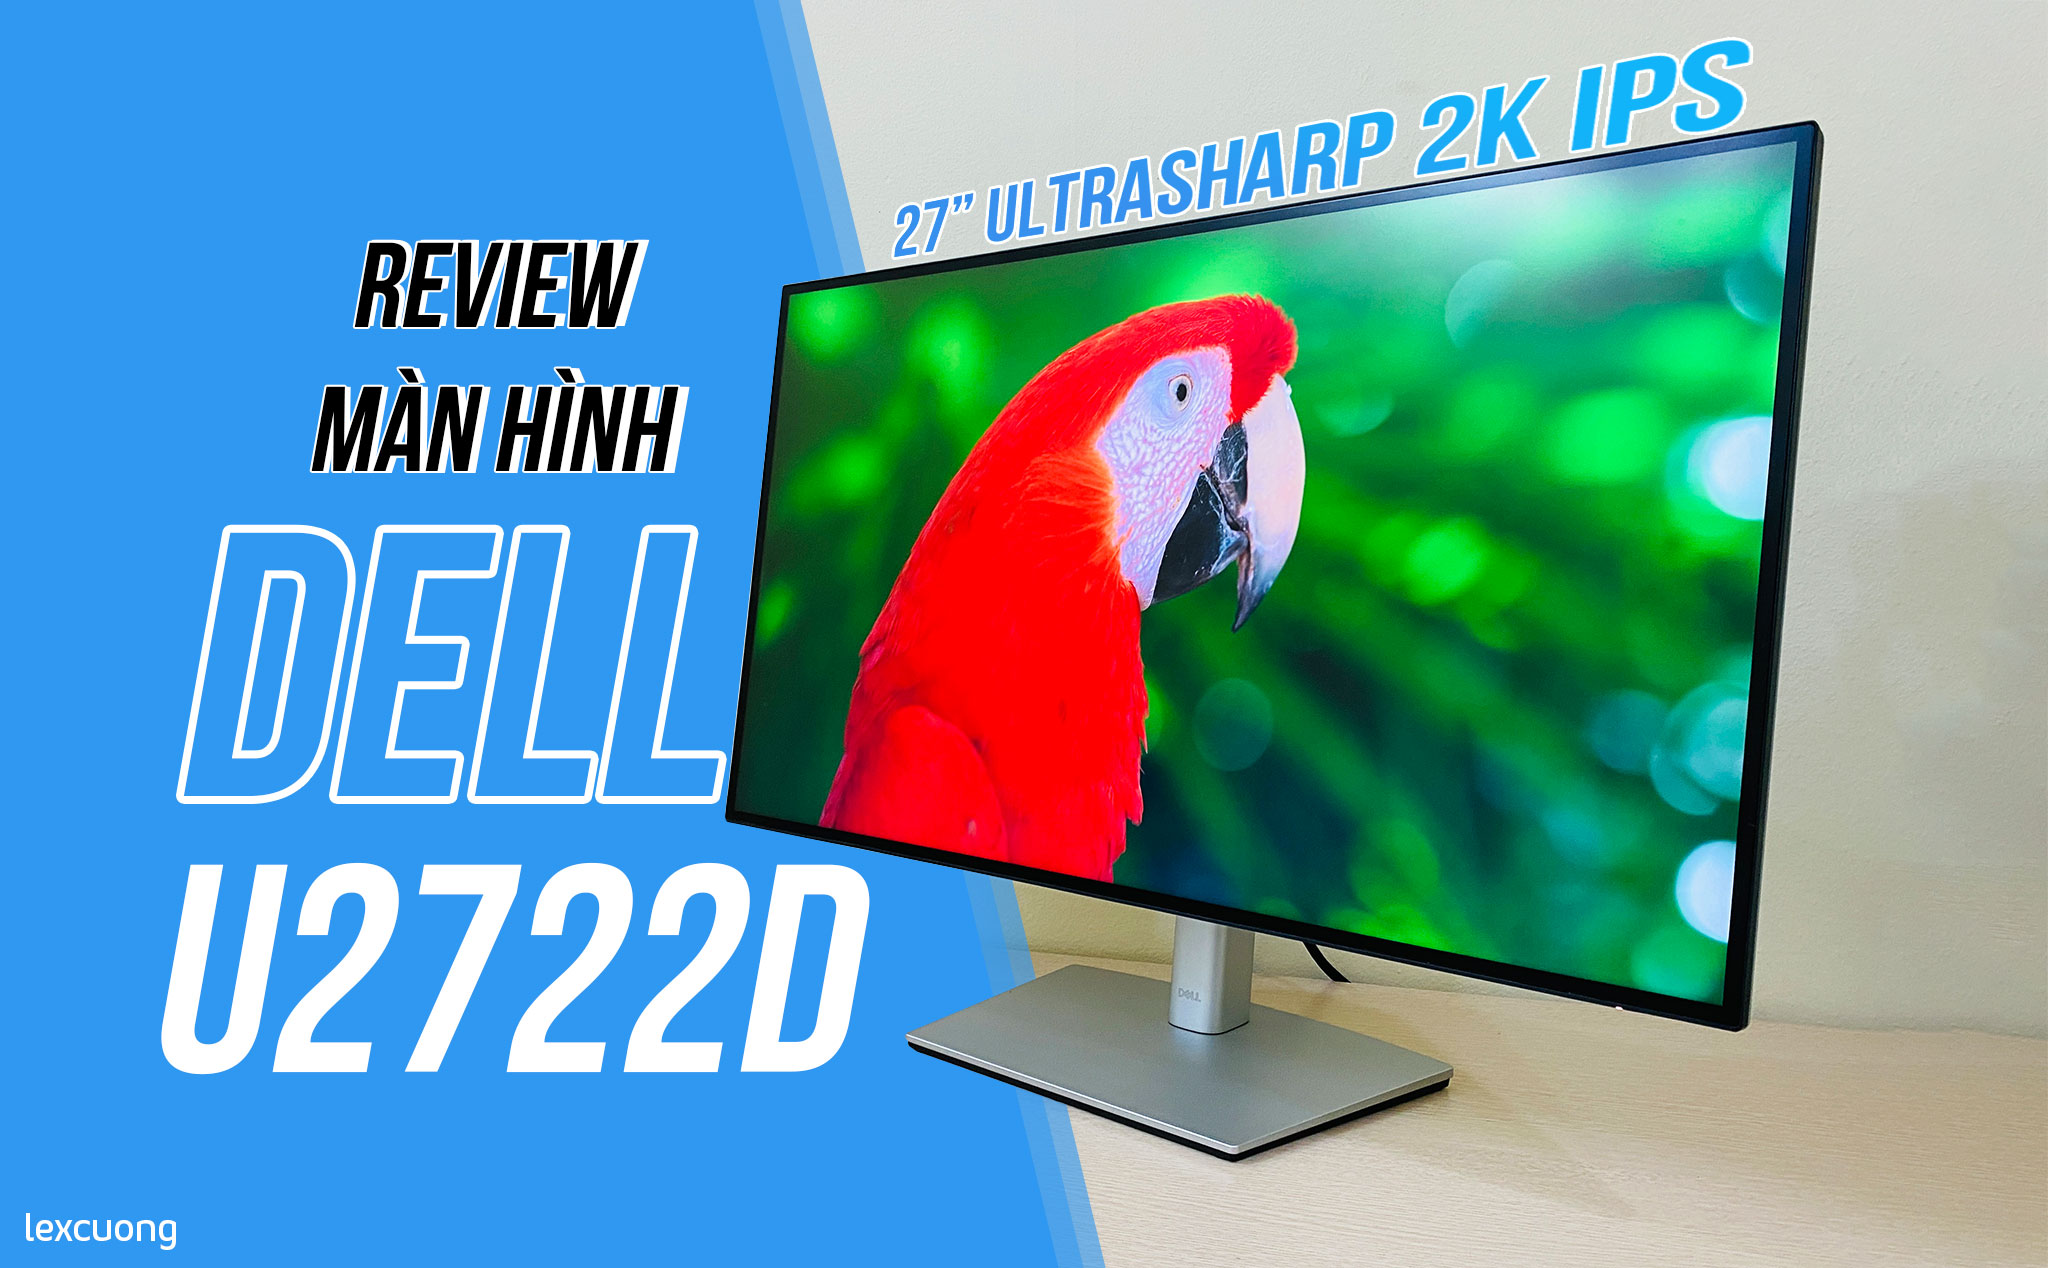 Mời bạn khám phá chi tiết của Dell UltraSharp U2722D - một trong những màn hình máy tính siêu nét và chất lượng nhất thị trường hiện nay. Với độ phân giải cao và màu sắc chính xác, nó sẽ mang đến thế giới hình ảnh chân thật và sống động hơn bao giờ hết.